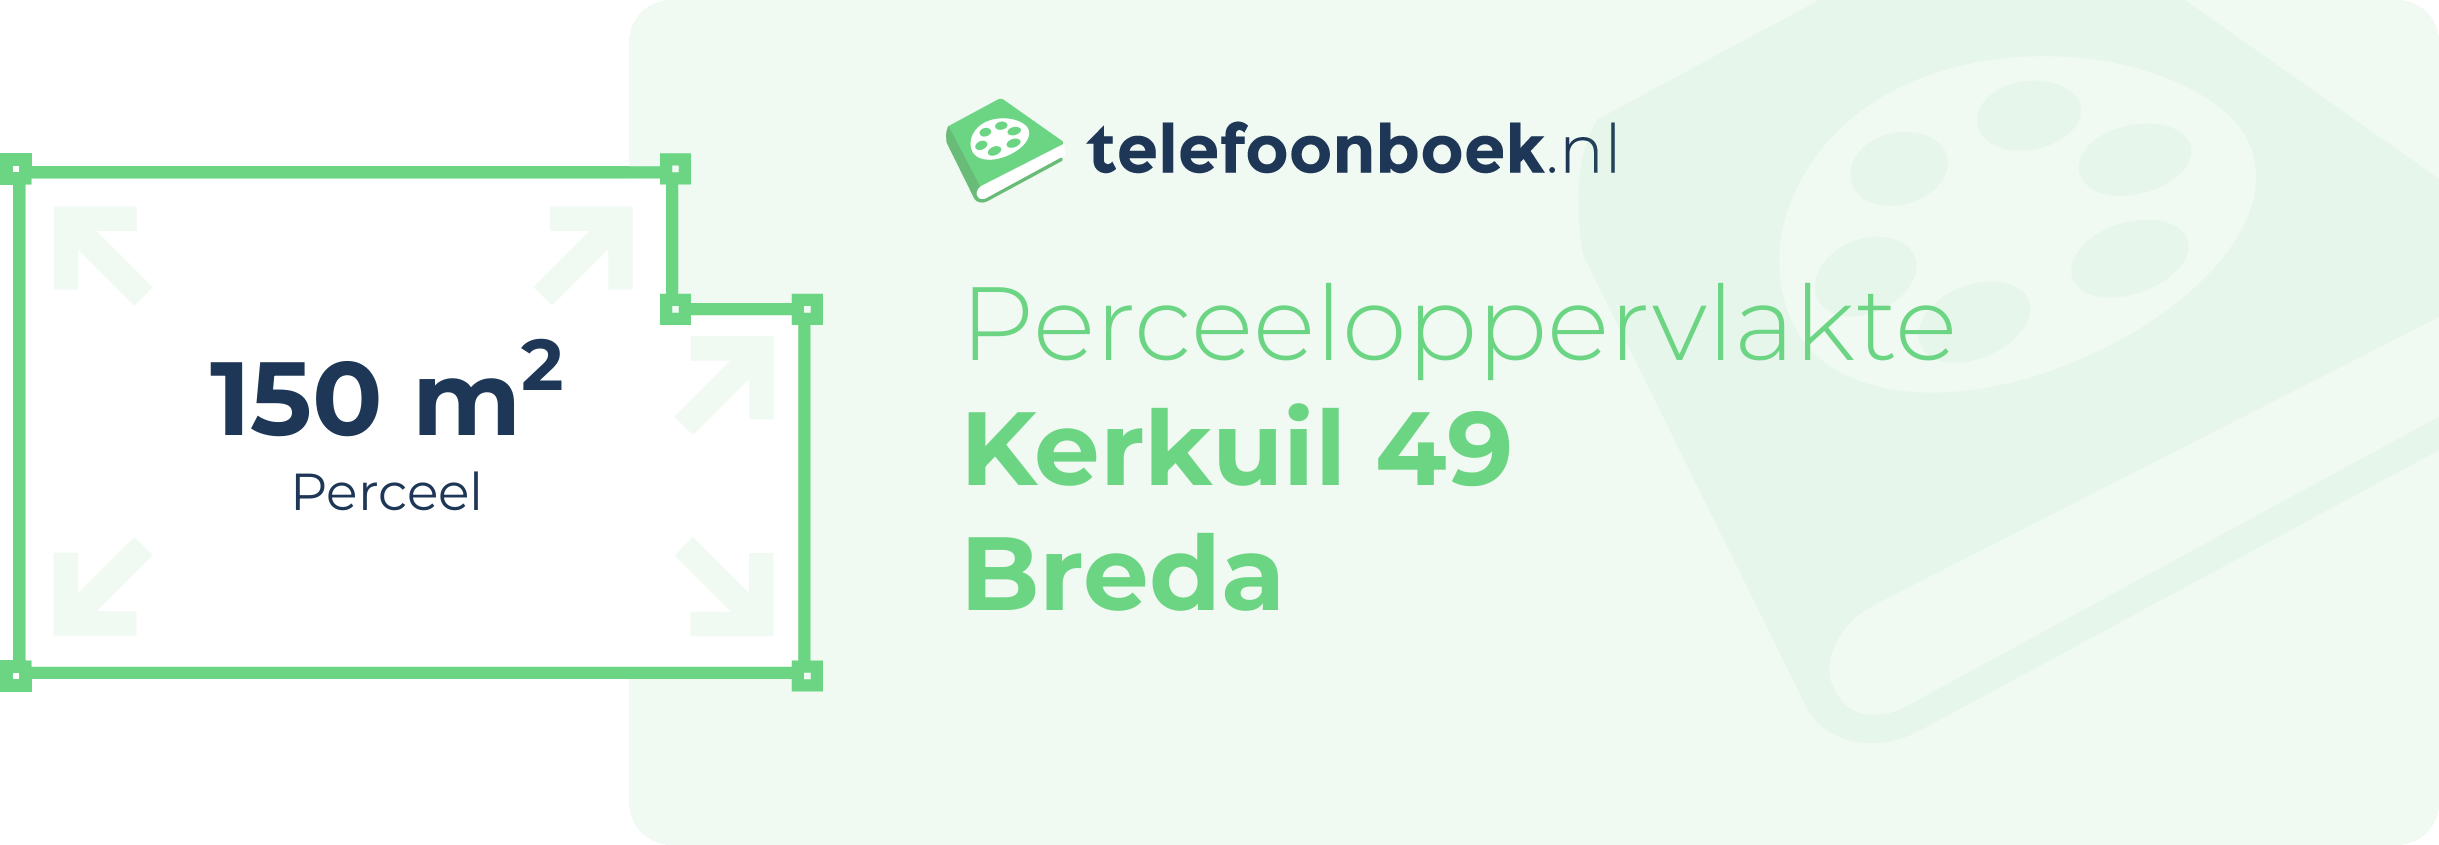 Perceeloppervlakte Kerkuil 49 Breda